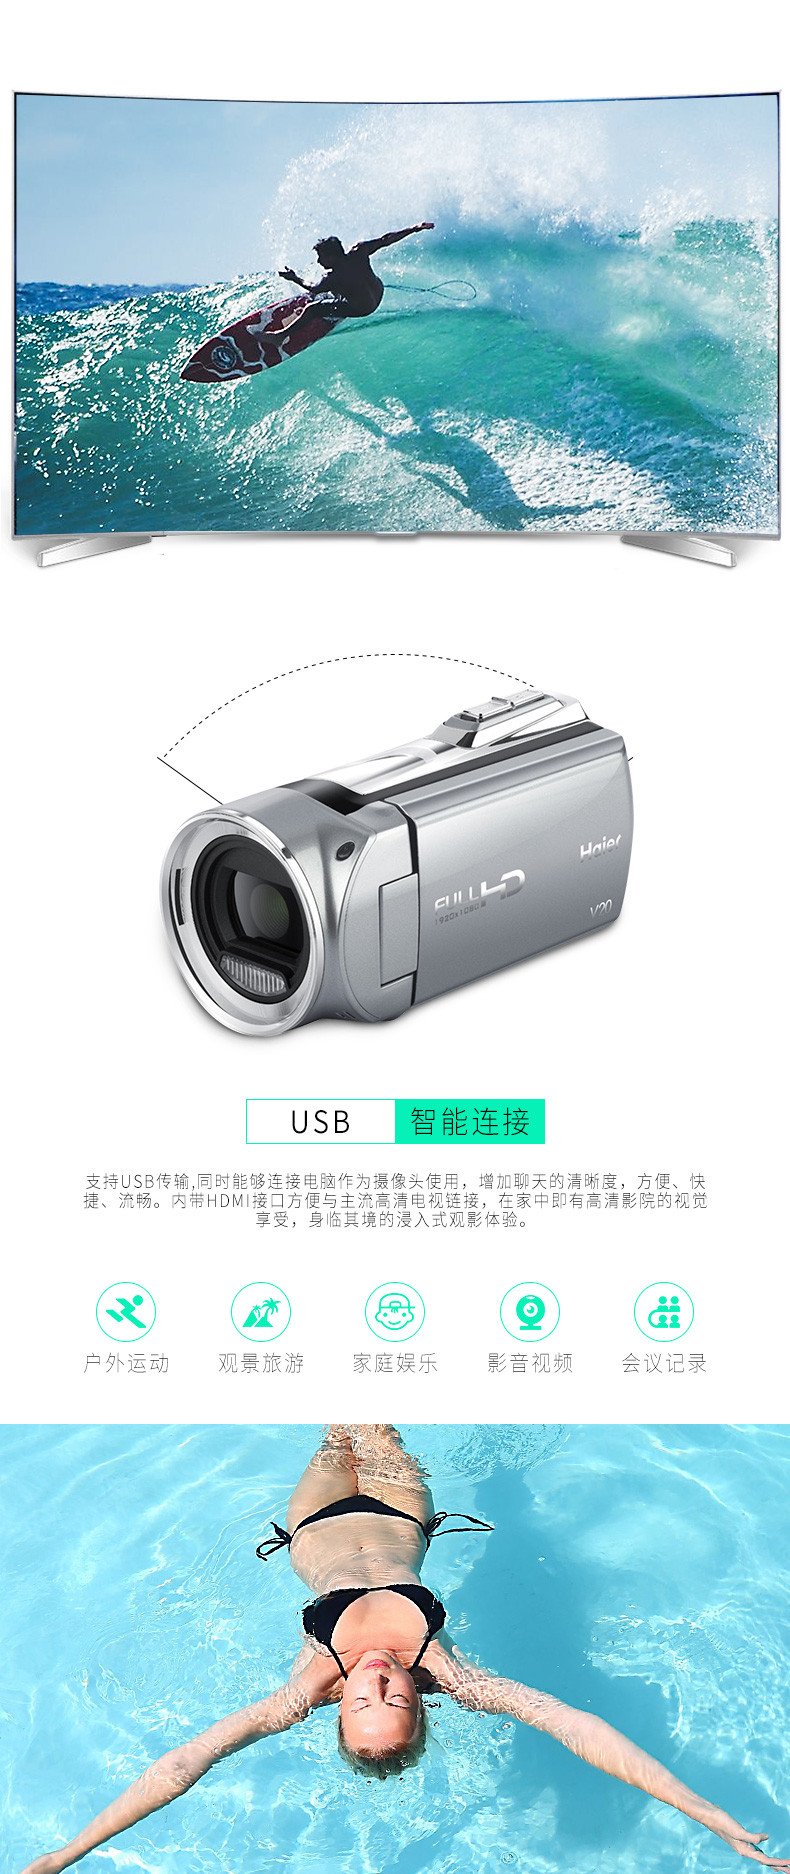   海尔数码摄像机 DV-V20   家用便携数码摄像机